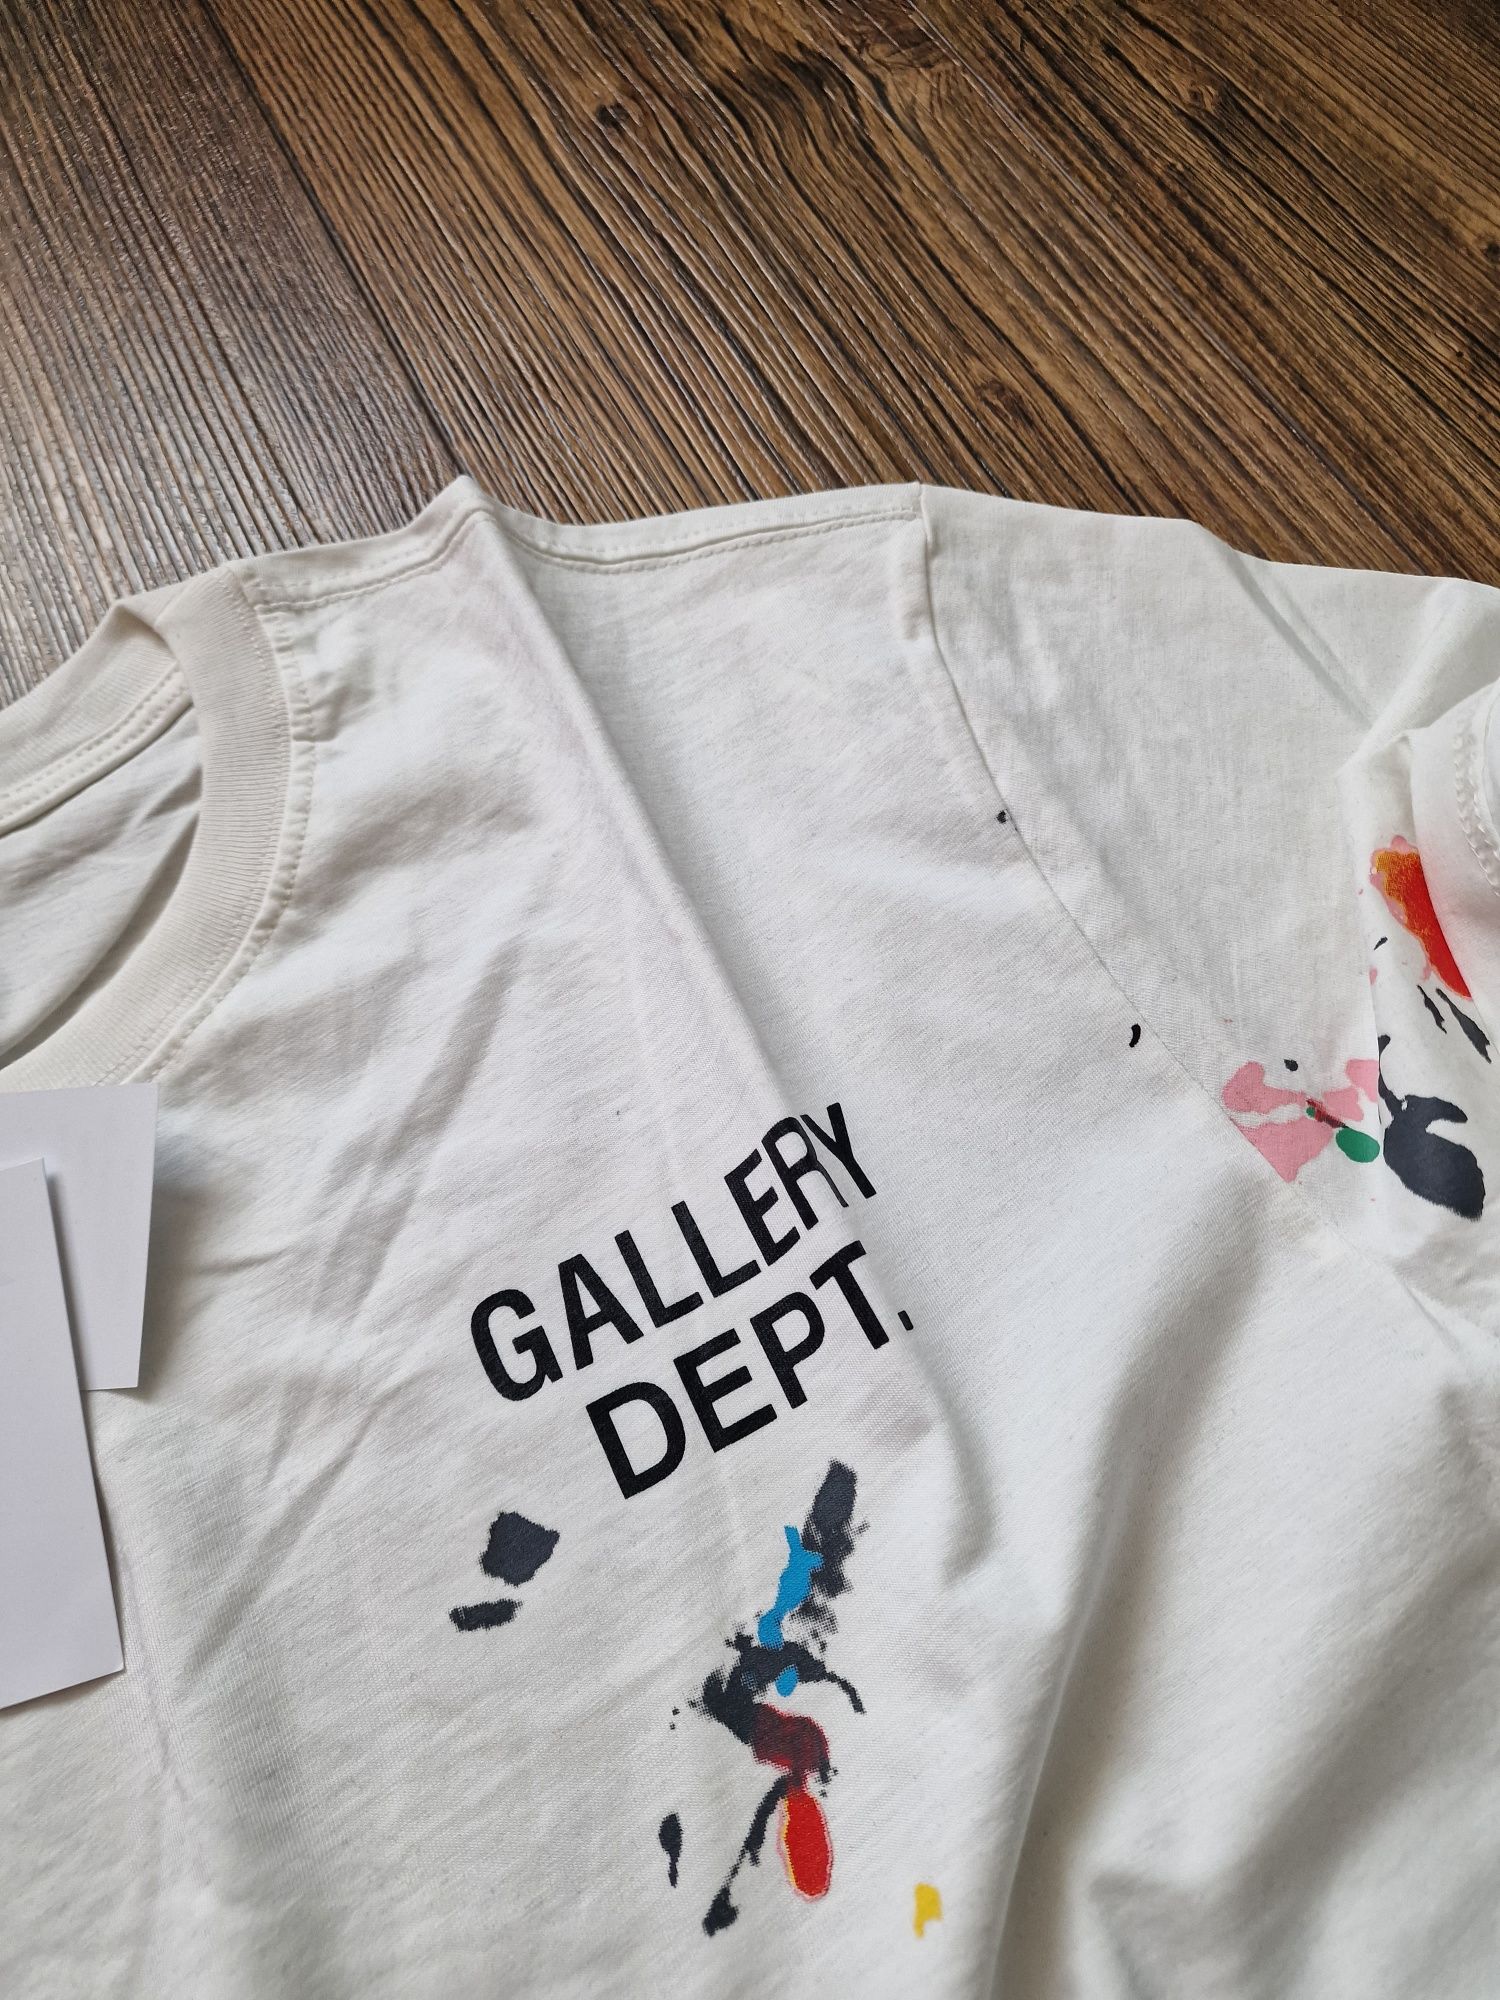 Страхотна мъжка тениска, GALLERY DERT  нова с етикет  , размер XL